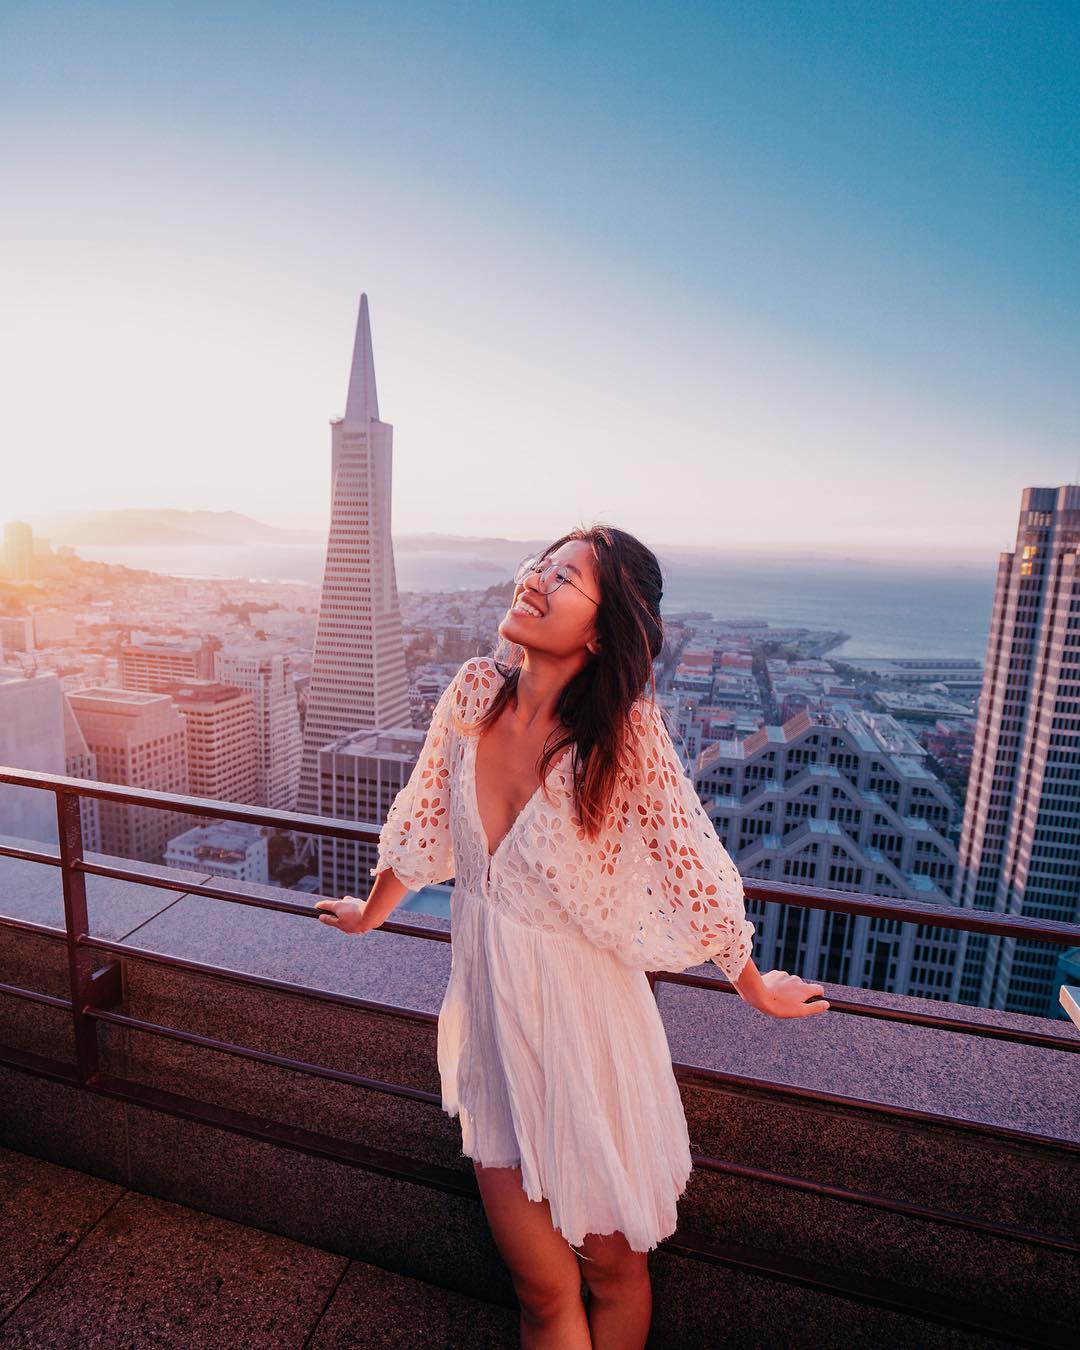 Dit zijn de mooiste 'rooftop'-uitzichten op Instagram - I'm Feeling Good 4